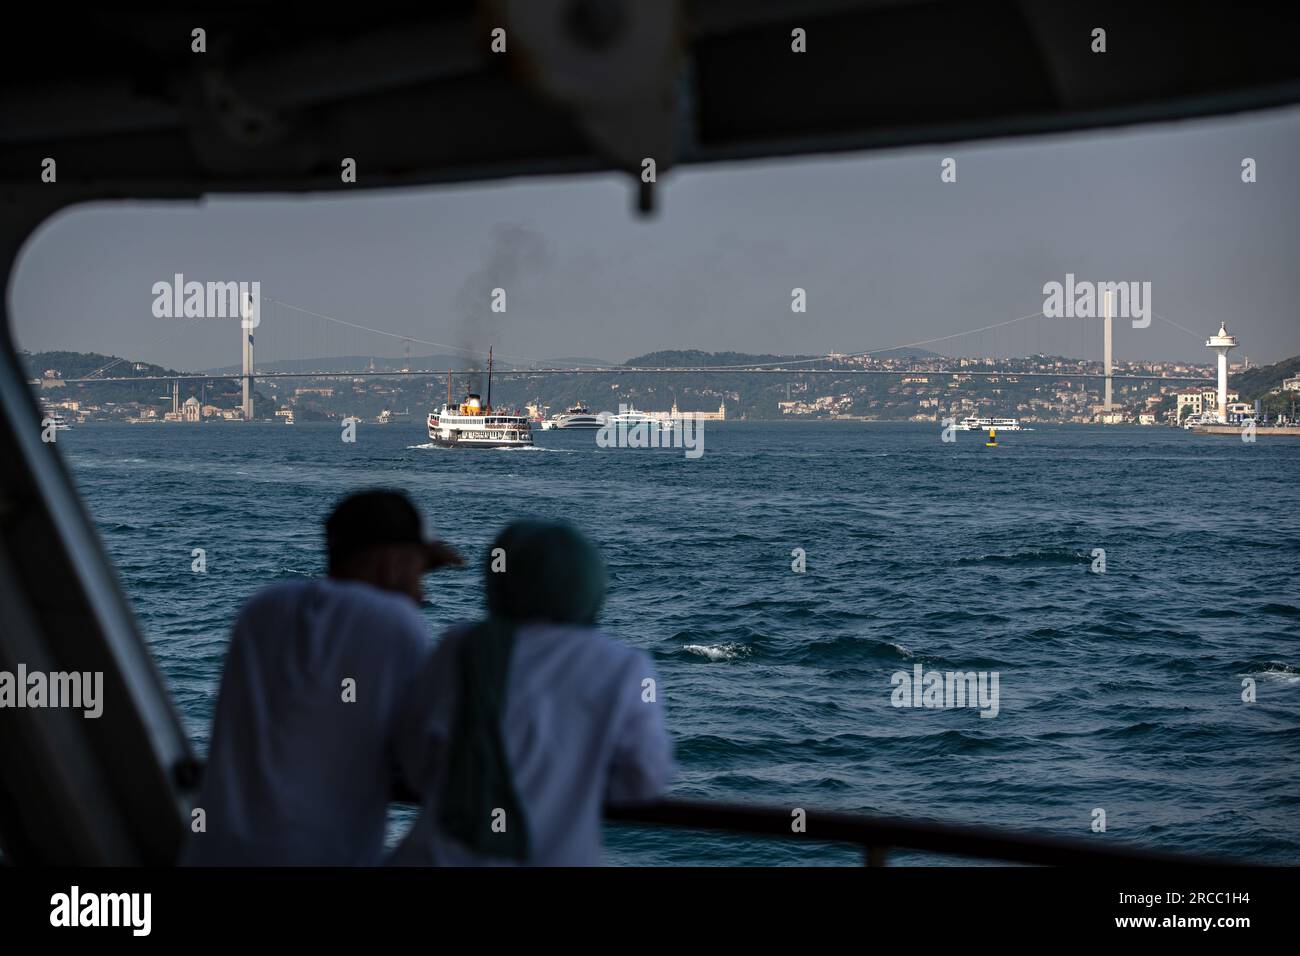 Les gens vus voyager dans la zone ouverte de la ville lignes ferry avec le Bosphore en arrière-plan pendant le temps chaud à Istanbul. Banque D'Images